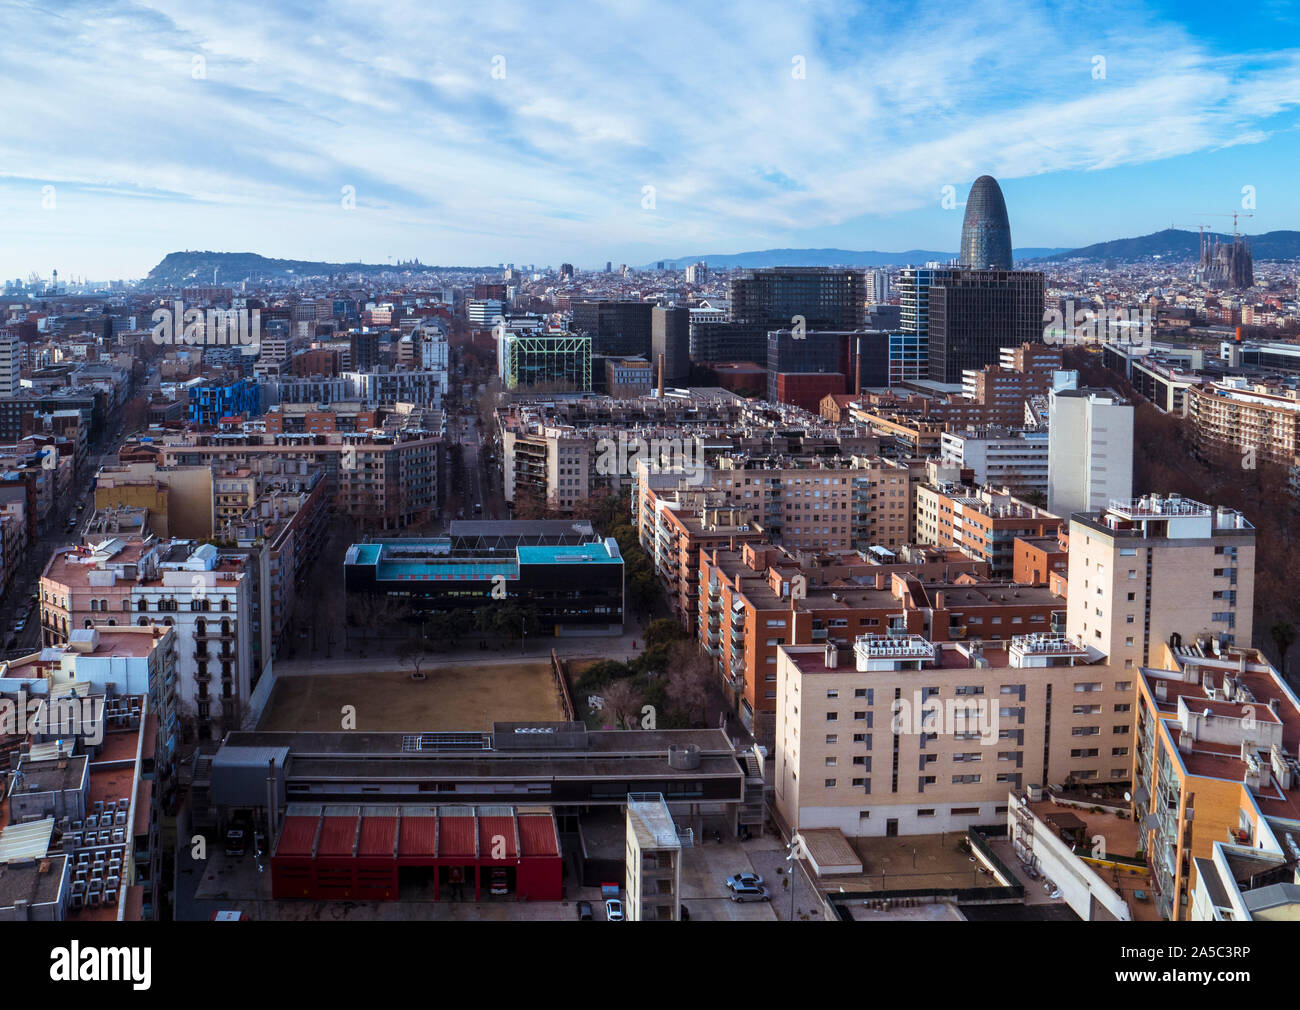 Les toits de Barcelone avec des sites célèbres Torre gloires et La Sagrada Familia s'élevant au-dessus de la ville - Barcelone, Catalogne, Espagne Banque D'Images